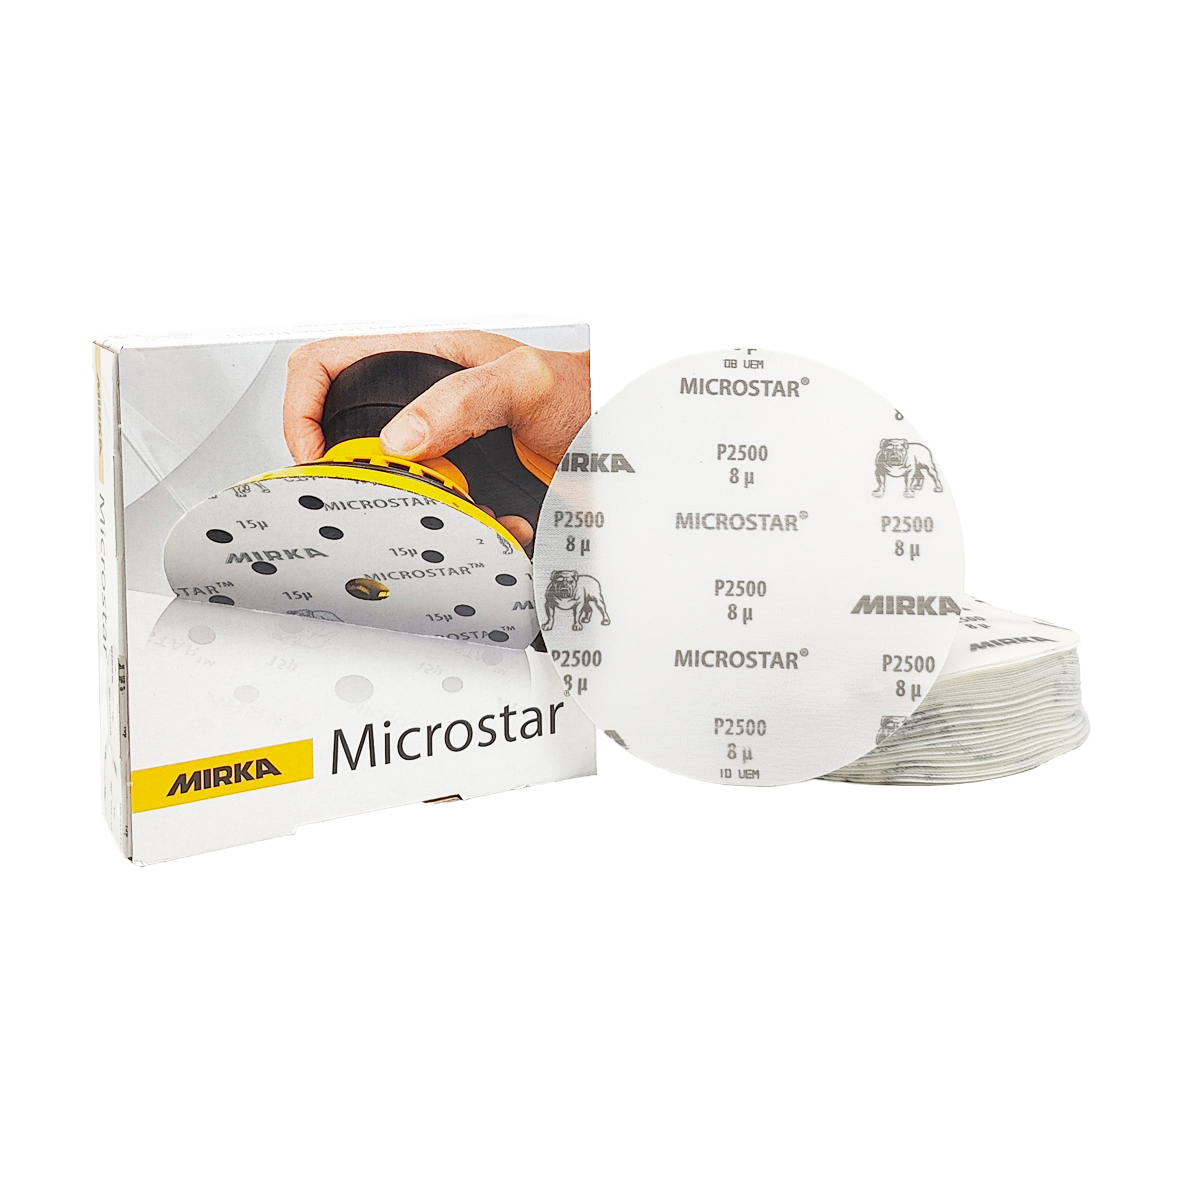 Abbildung Mirka Microstar 150mm Verpackung und Scheiben als Stapel.